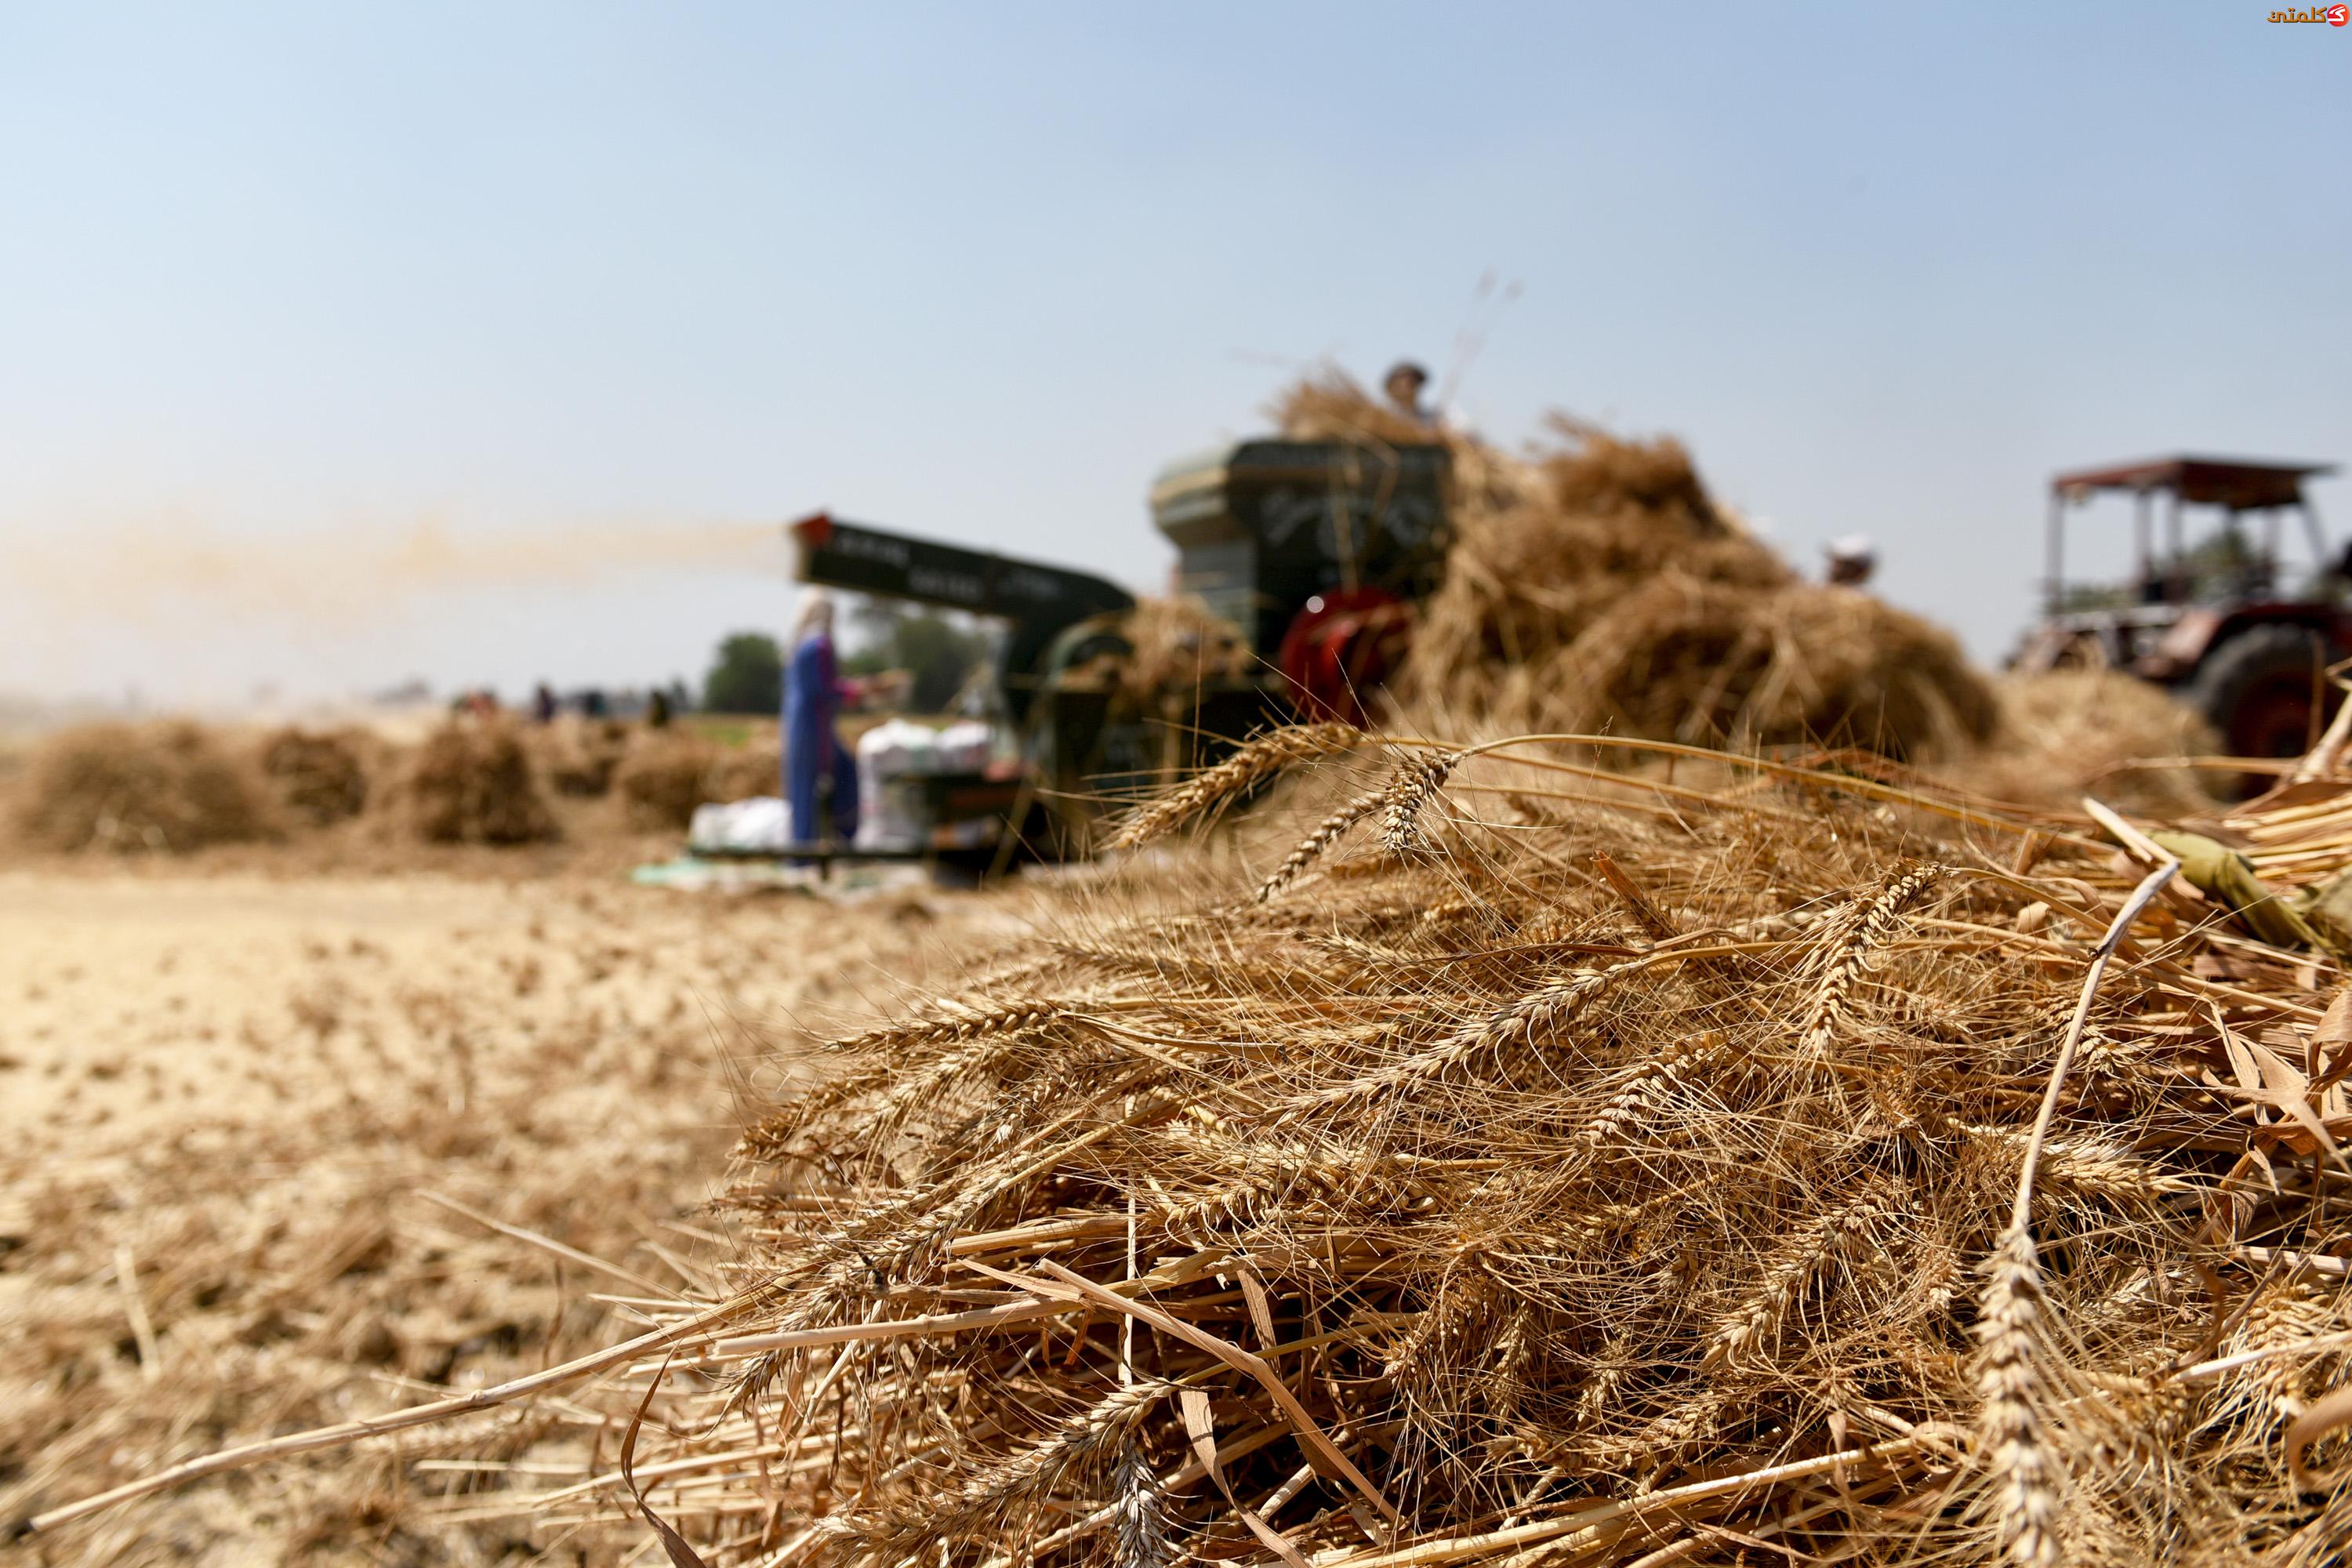  تموين كفر الشيخ : الشون والصوامع استقبلت ألف و 327 طن قمح من المزارعين